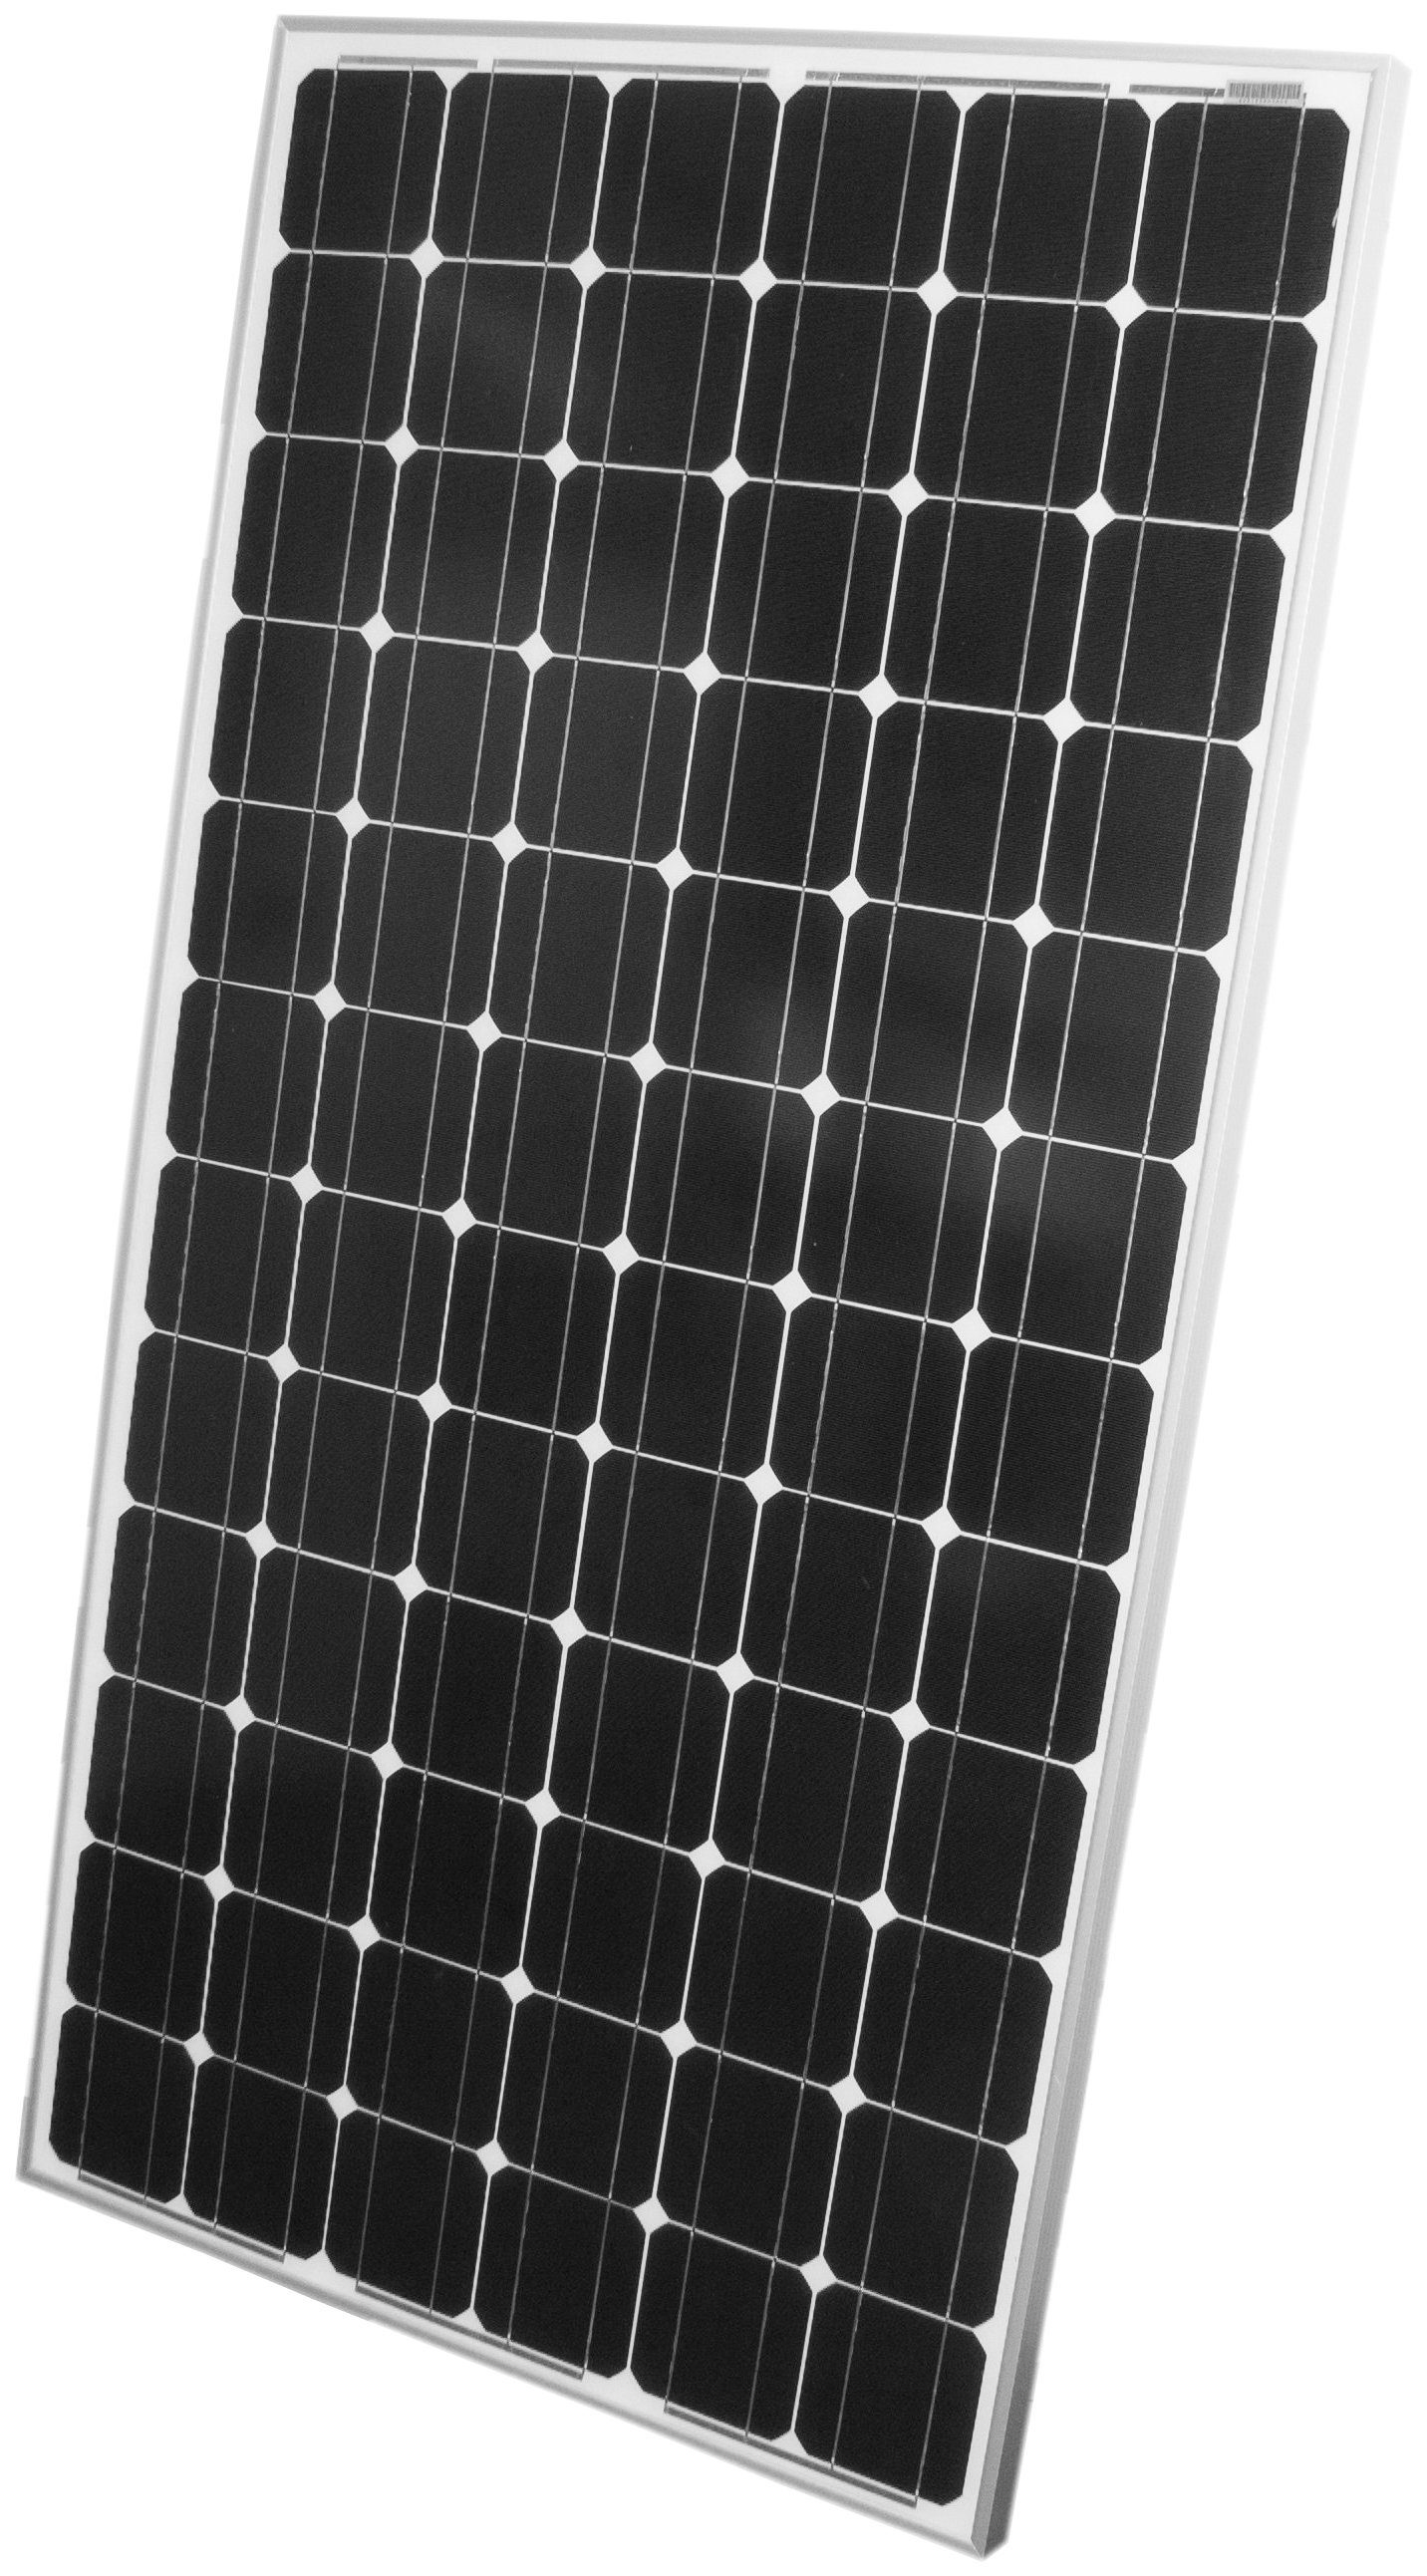 Phaesun Solarmodul Sun Plus 200_5, 200 W, 24 VDC, IP65 Schutz